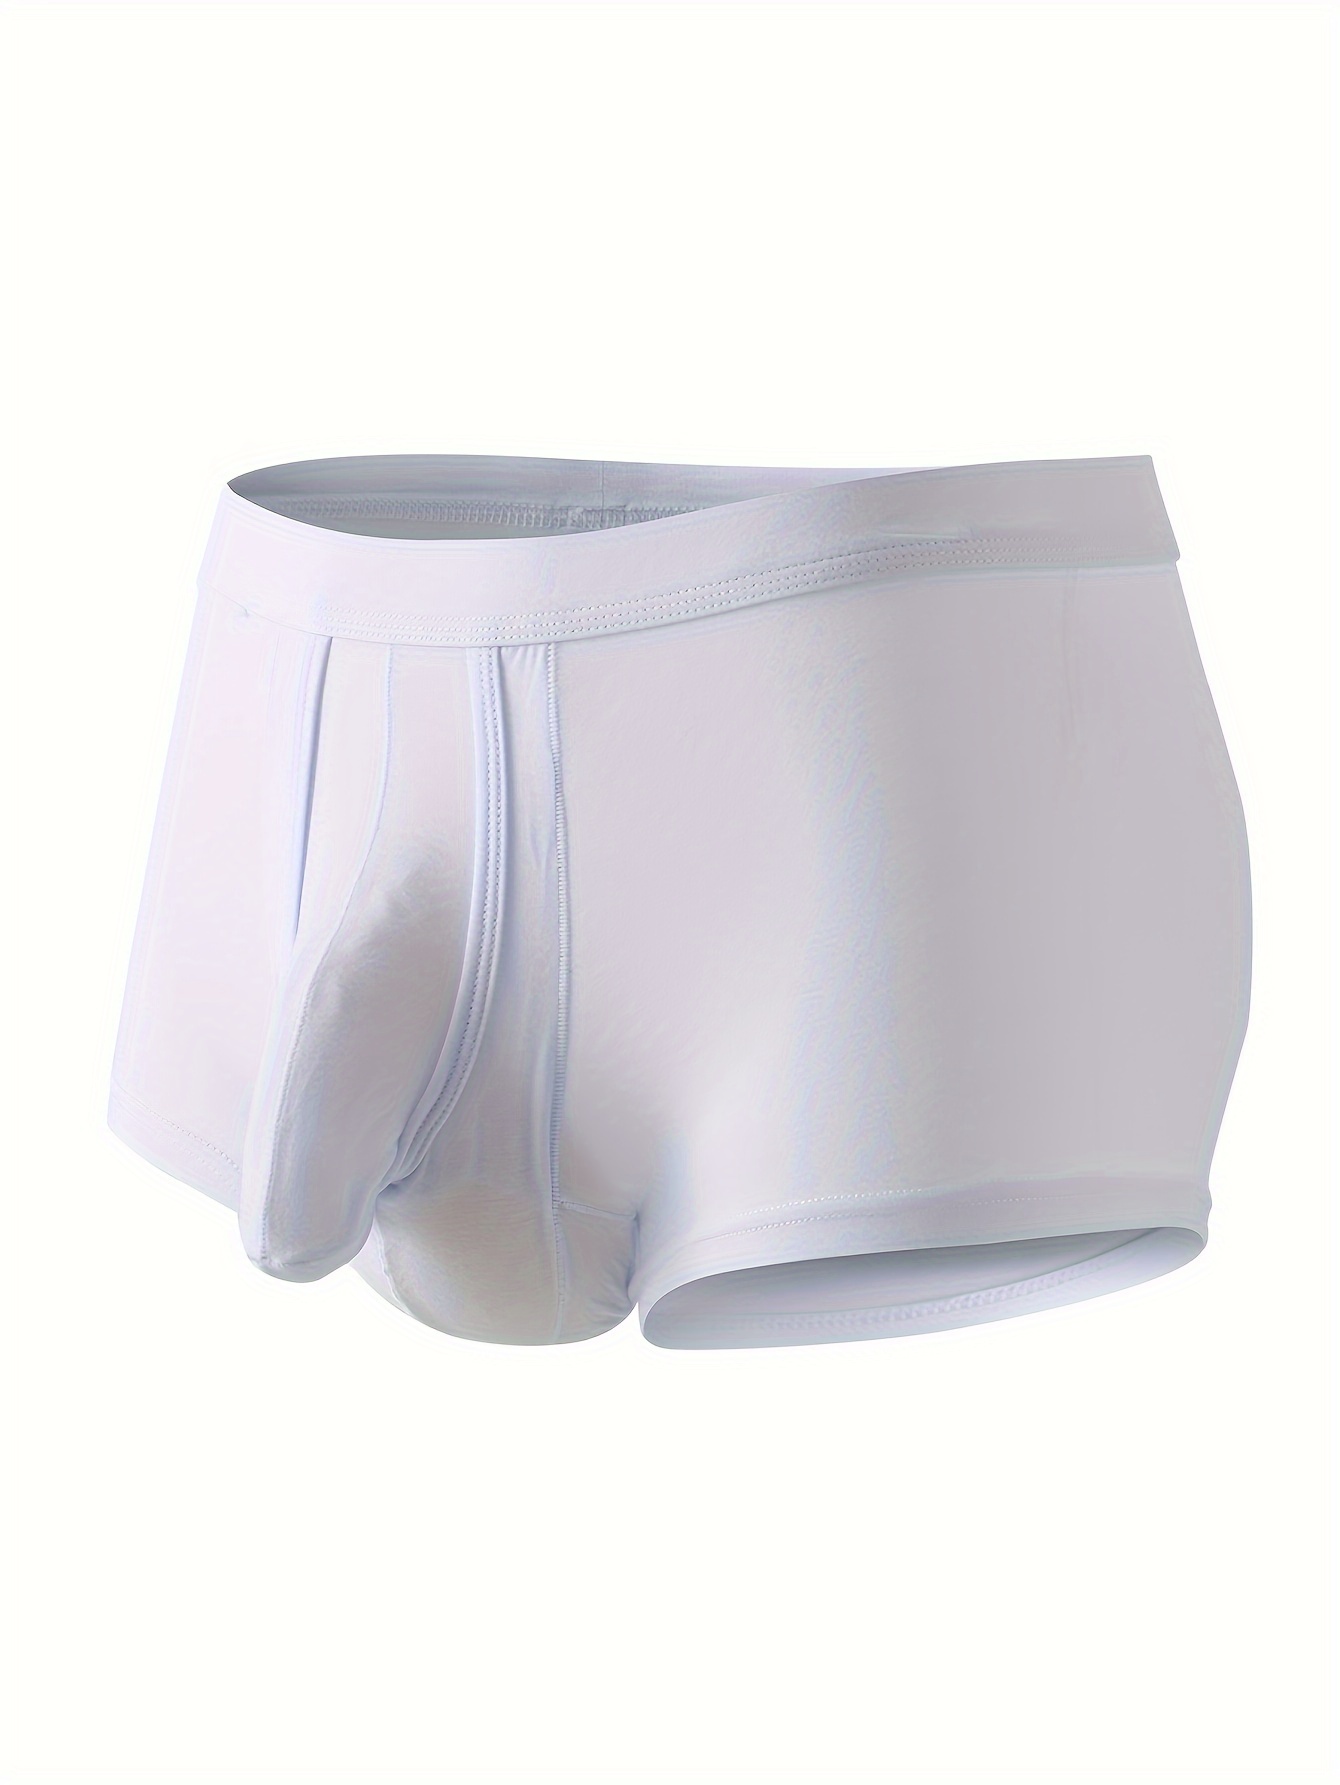 Men's Boxer Briefs Underwear Passion T-back perspective Gauze Hole Underpant